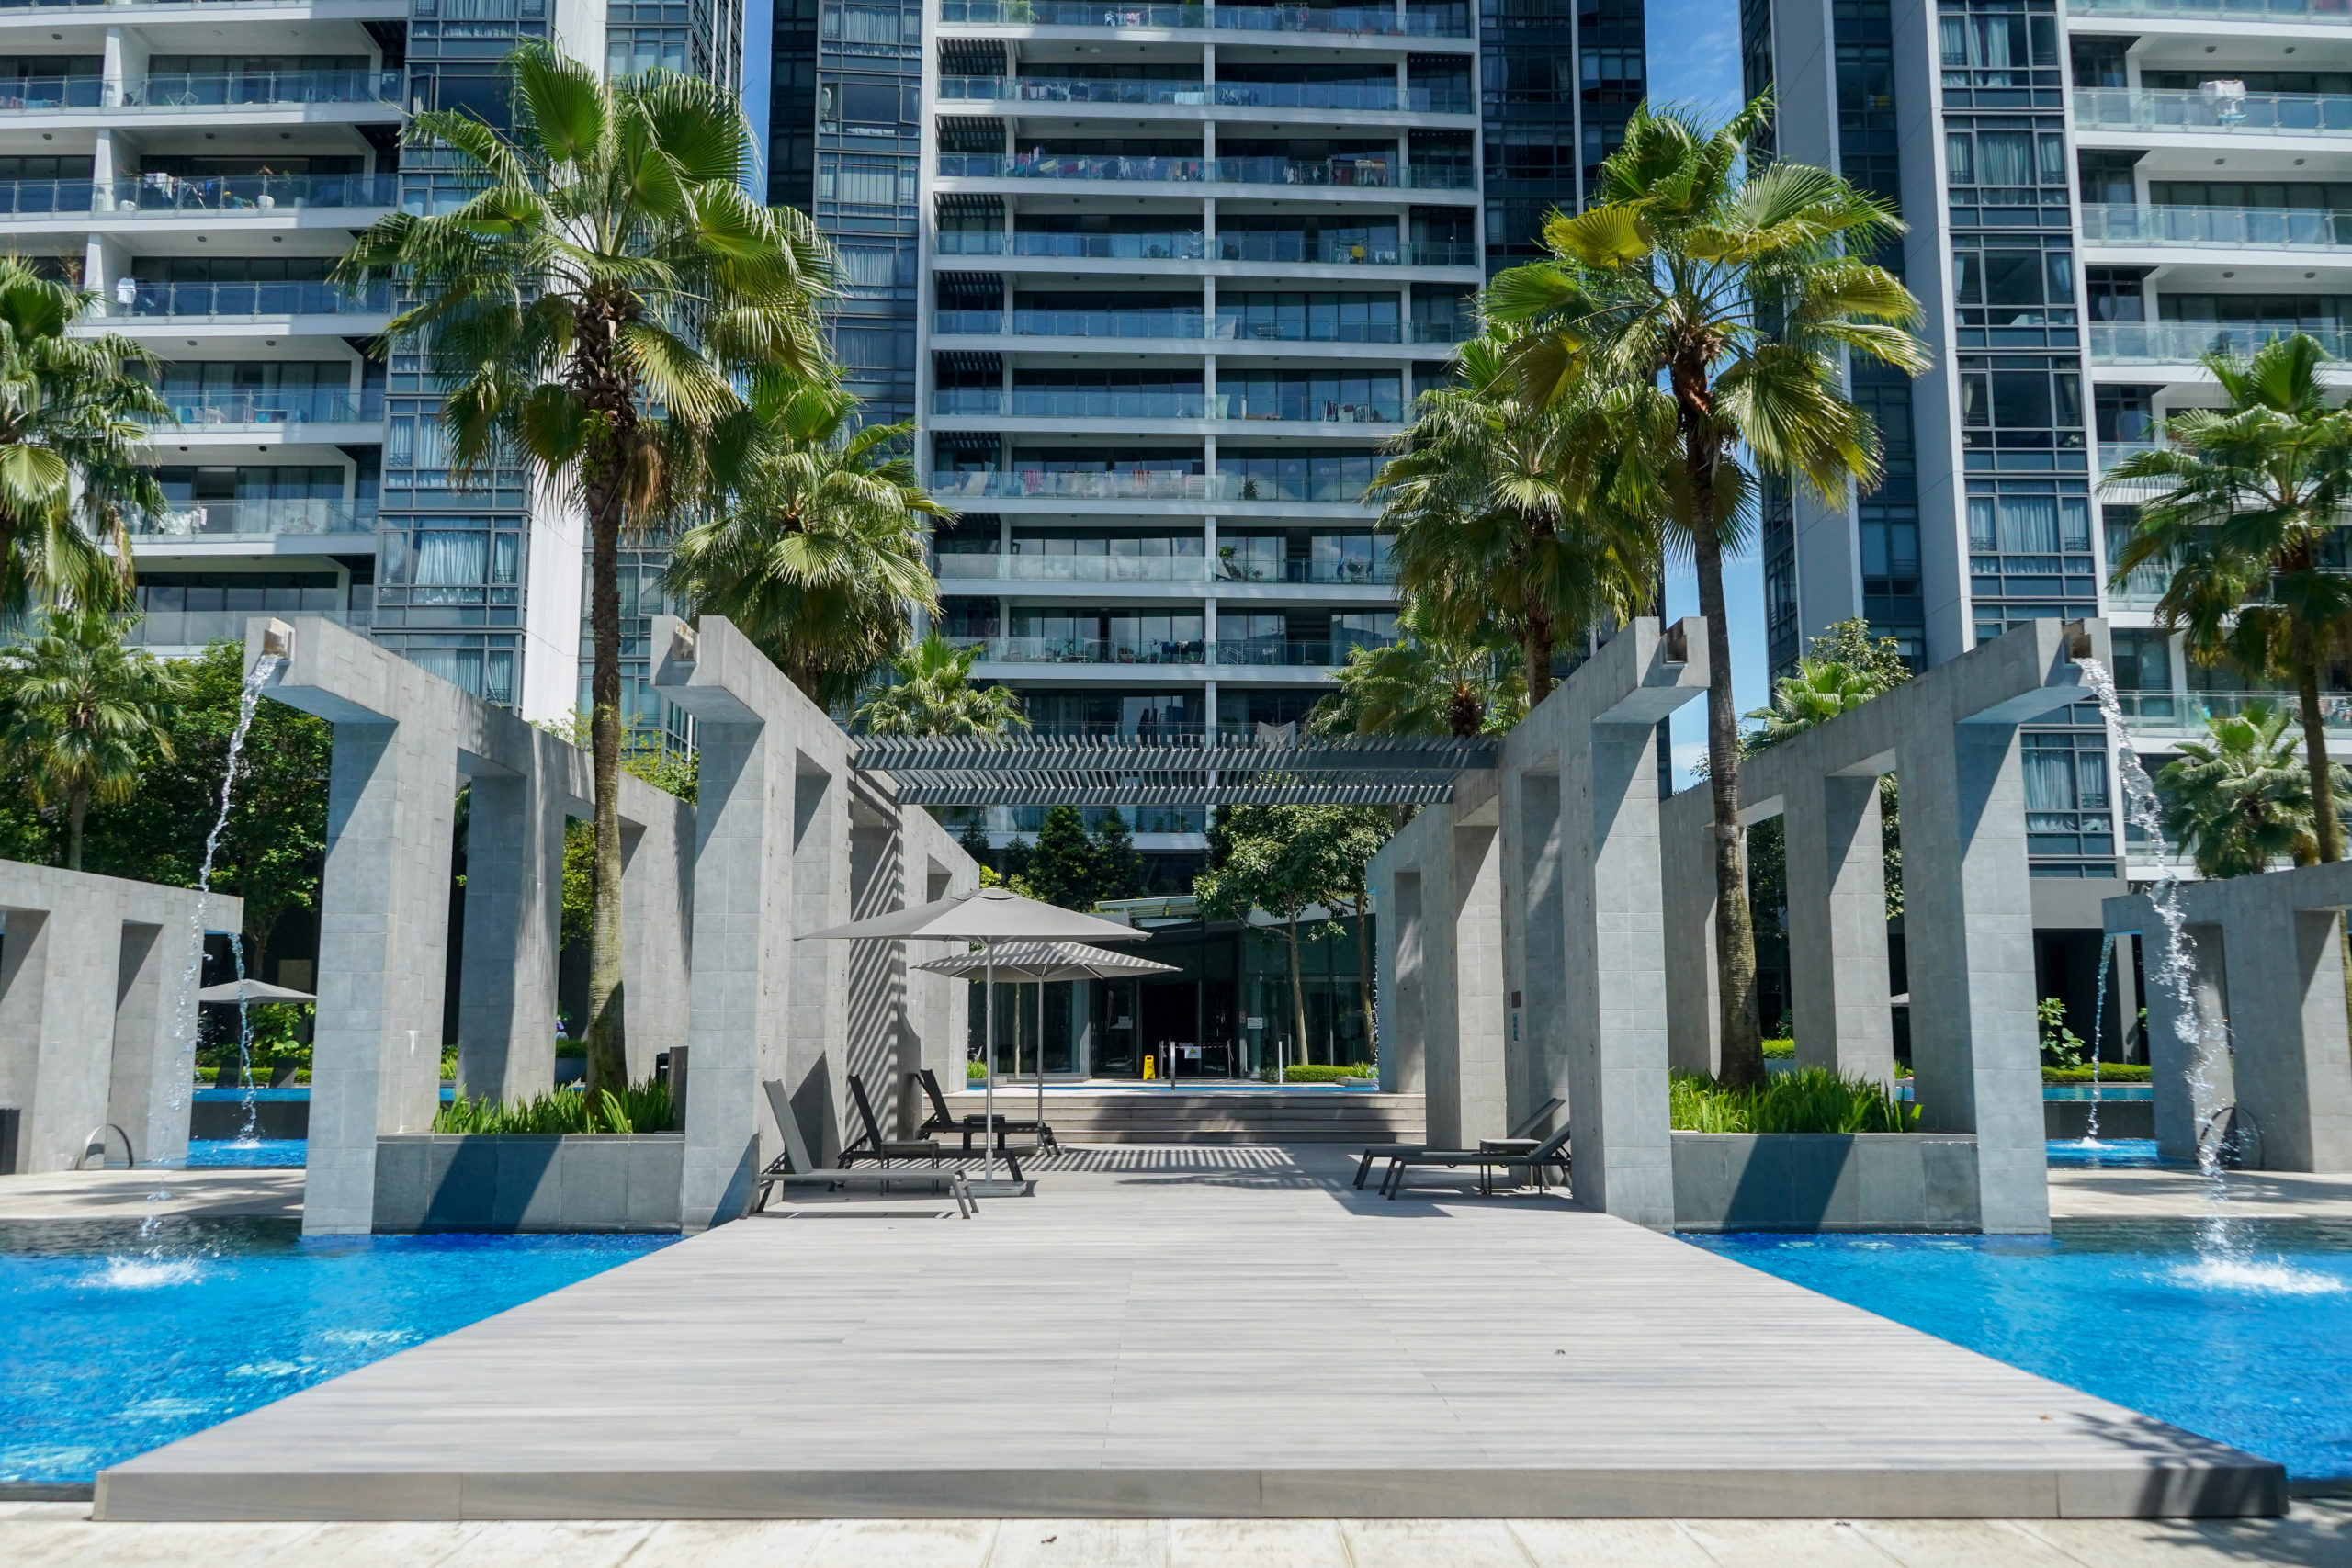 Tulou Composite Timber Decking Singapore Viva 1 scaled - Viva Condominium